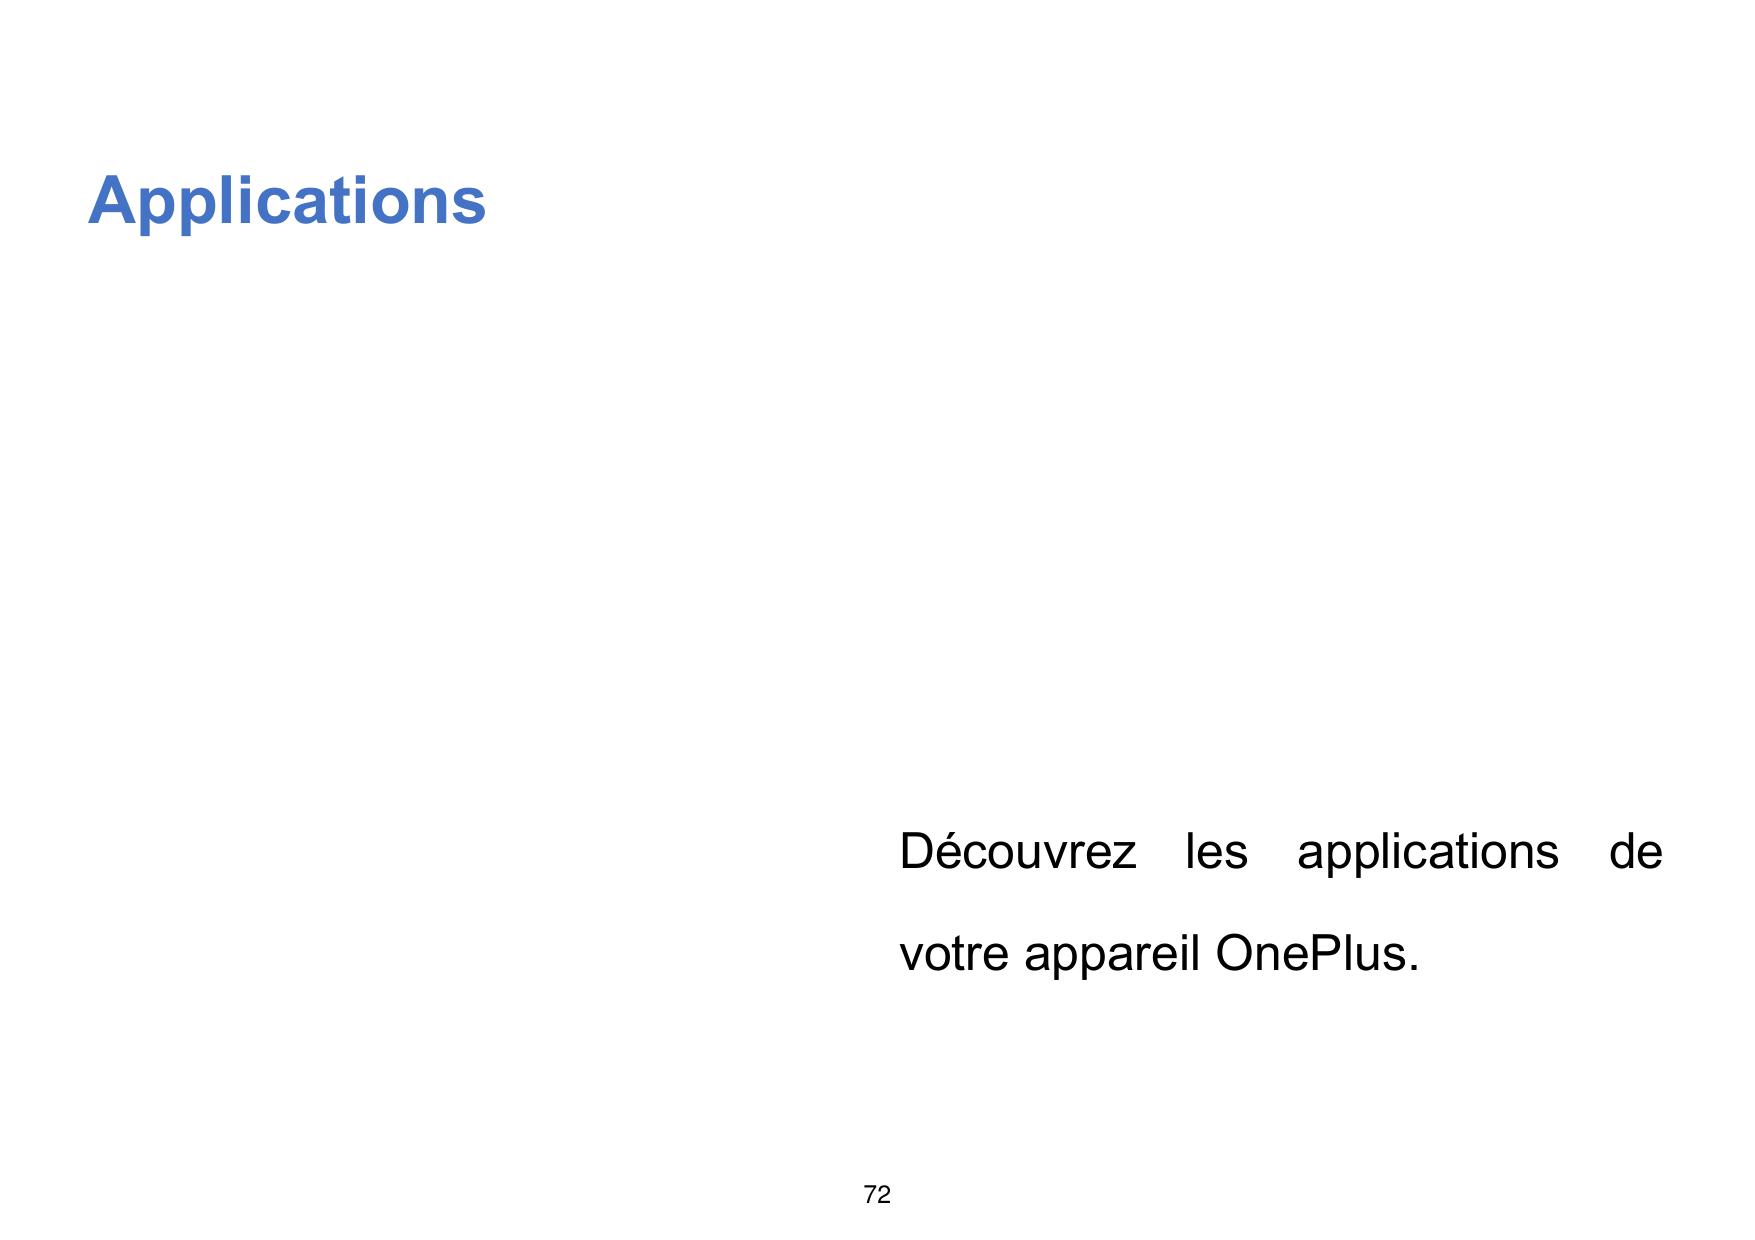 ApplicationsDécouvrez les applications devotre appareil OnePlus.72